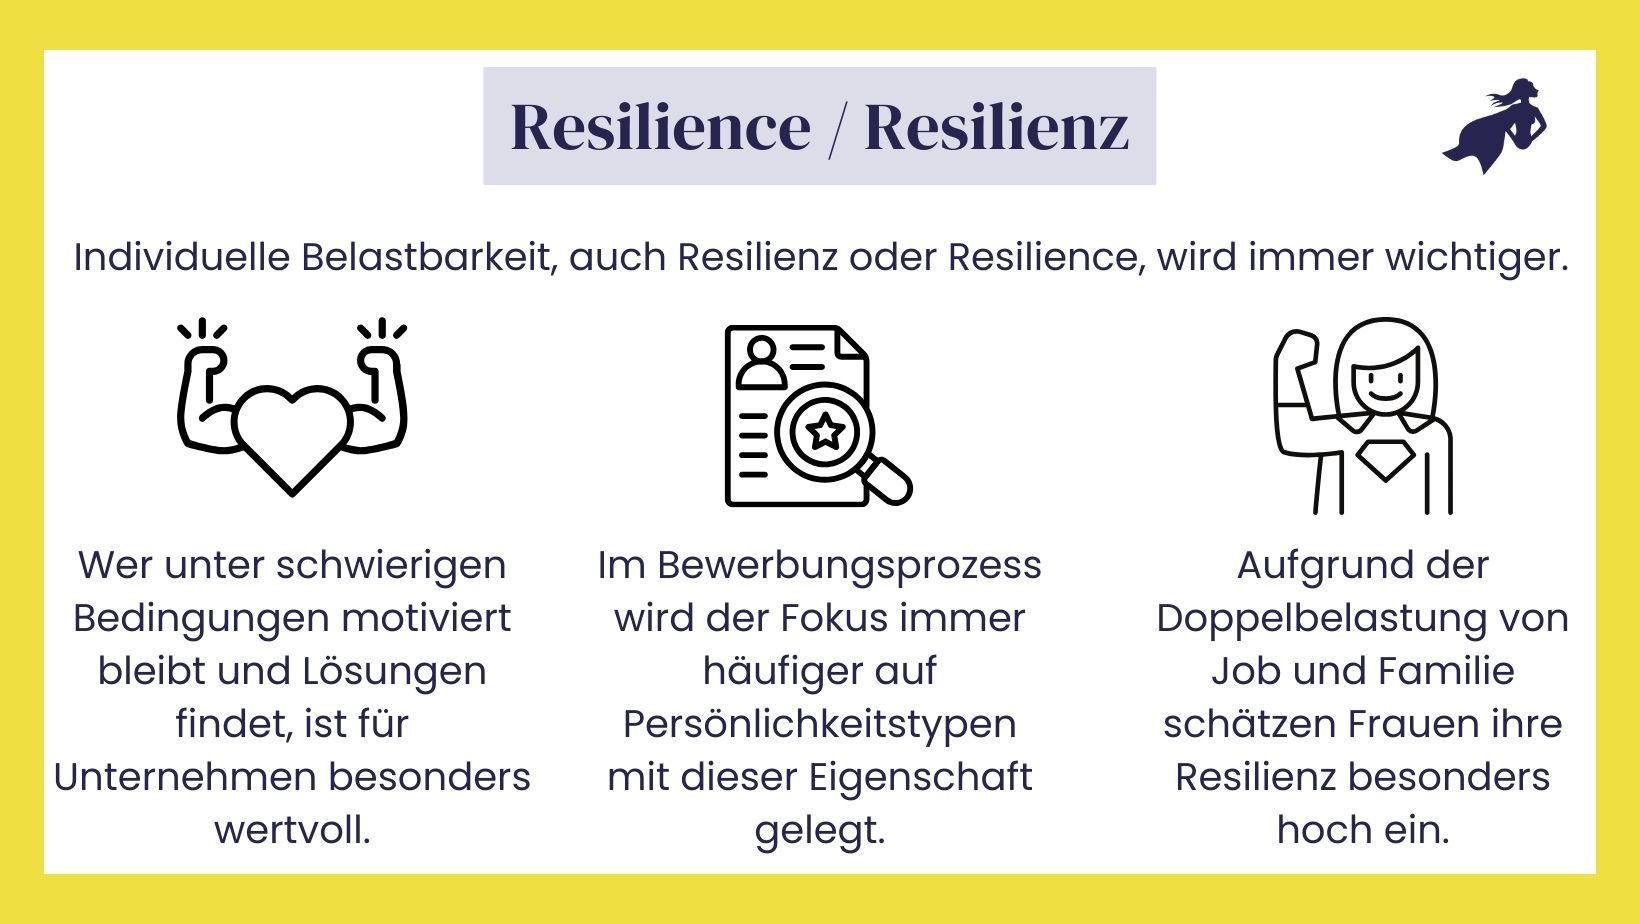 Mitarbeiter mit Resilience finden